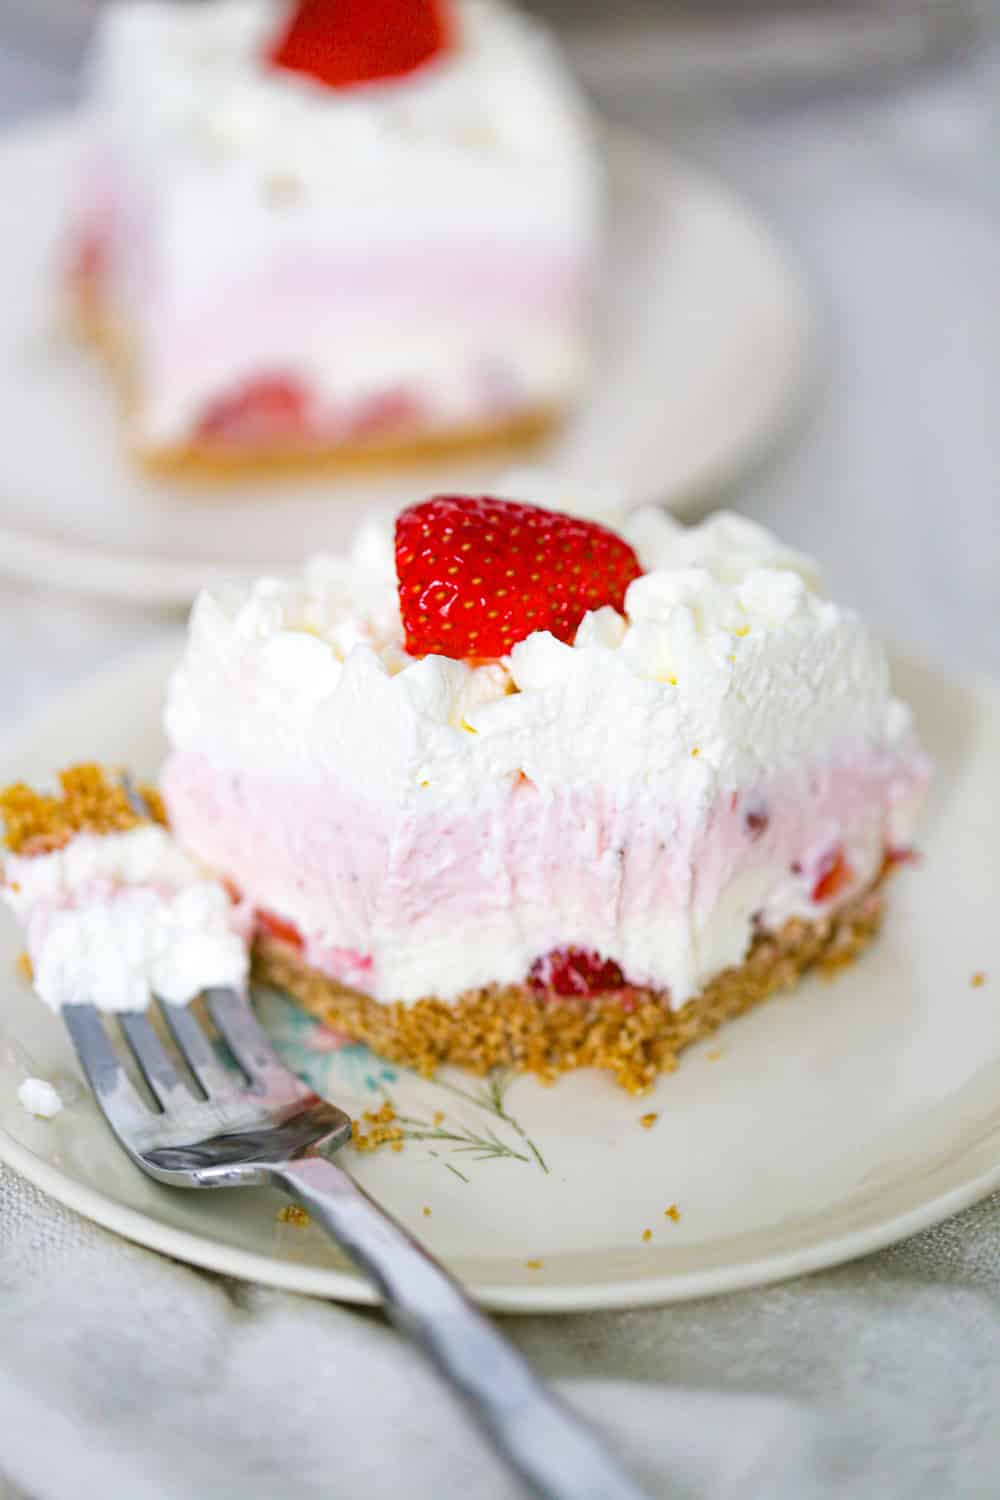 No Bake Strawberry Cream Layered Dessert - The Baking ChocolaTess